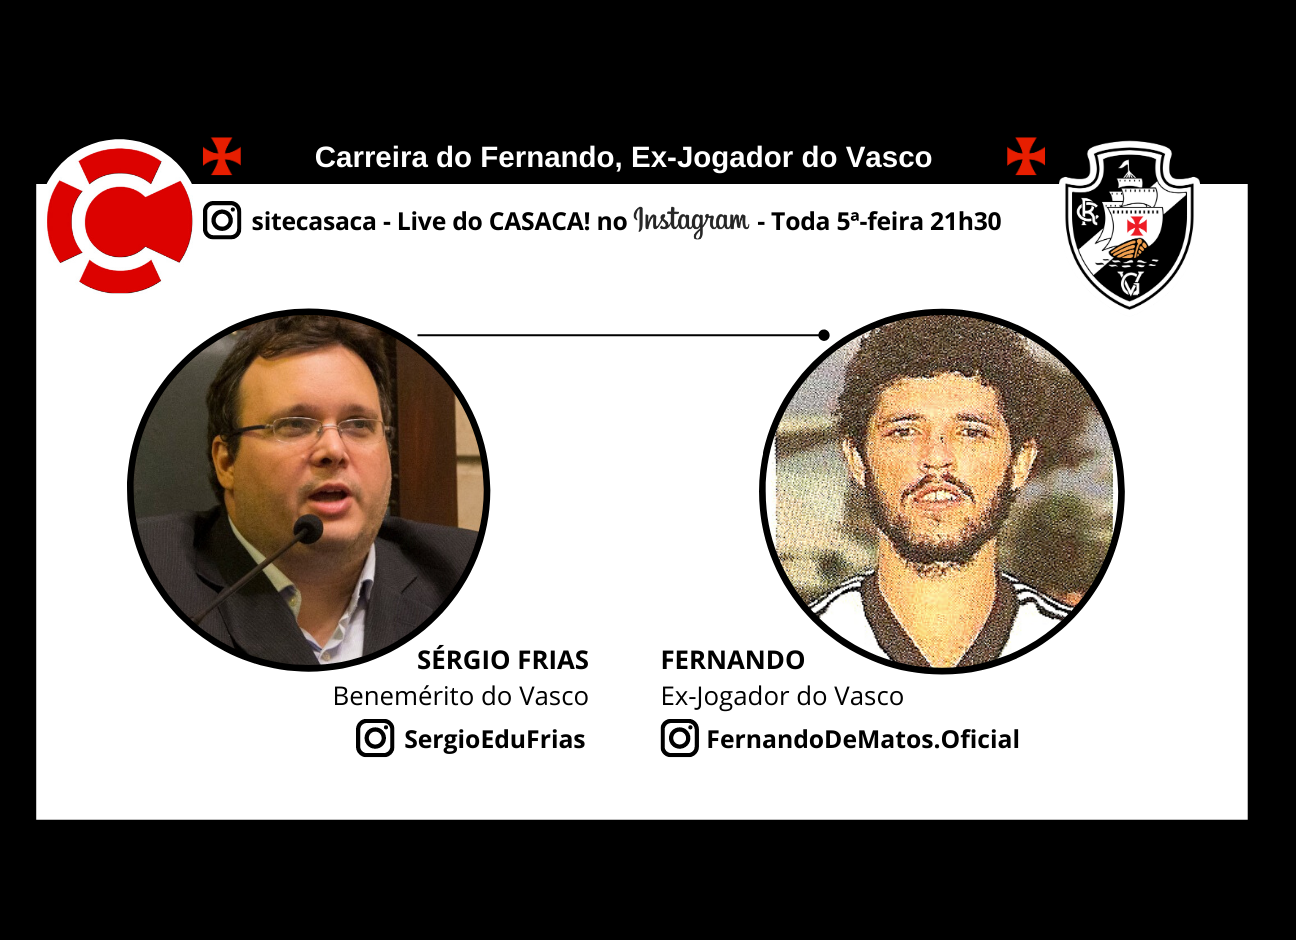 FERNANDO MATOS – Live do CASACA! no Instagram